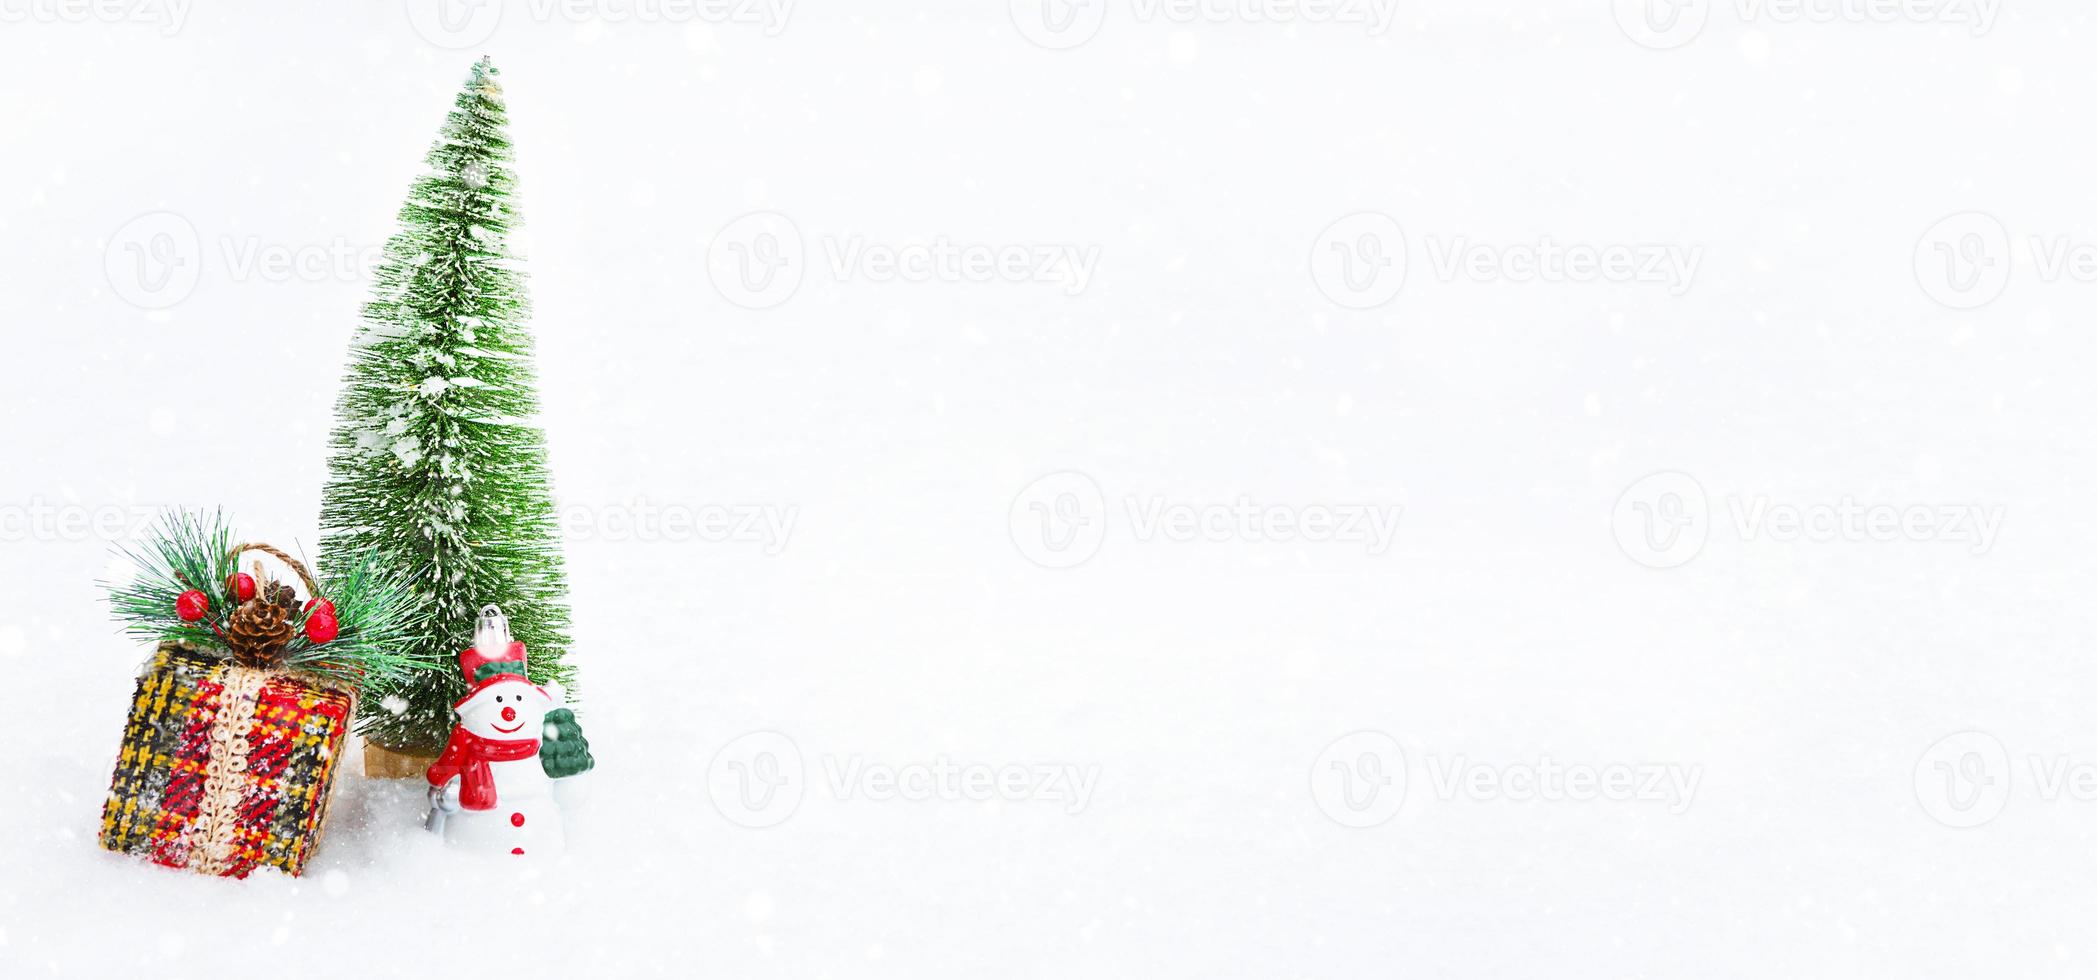 uma árvore de natal, uma caixa de presente e um boneco de neve de brinquedo na neve natural branca em uma queda de neve. decoração para o ano novo e natal, cartão com copyspace foto